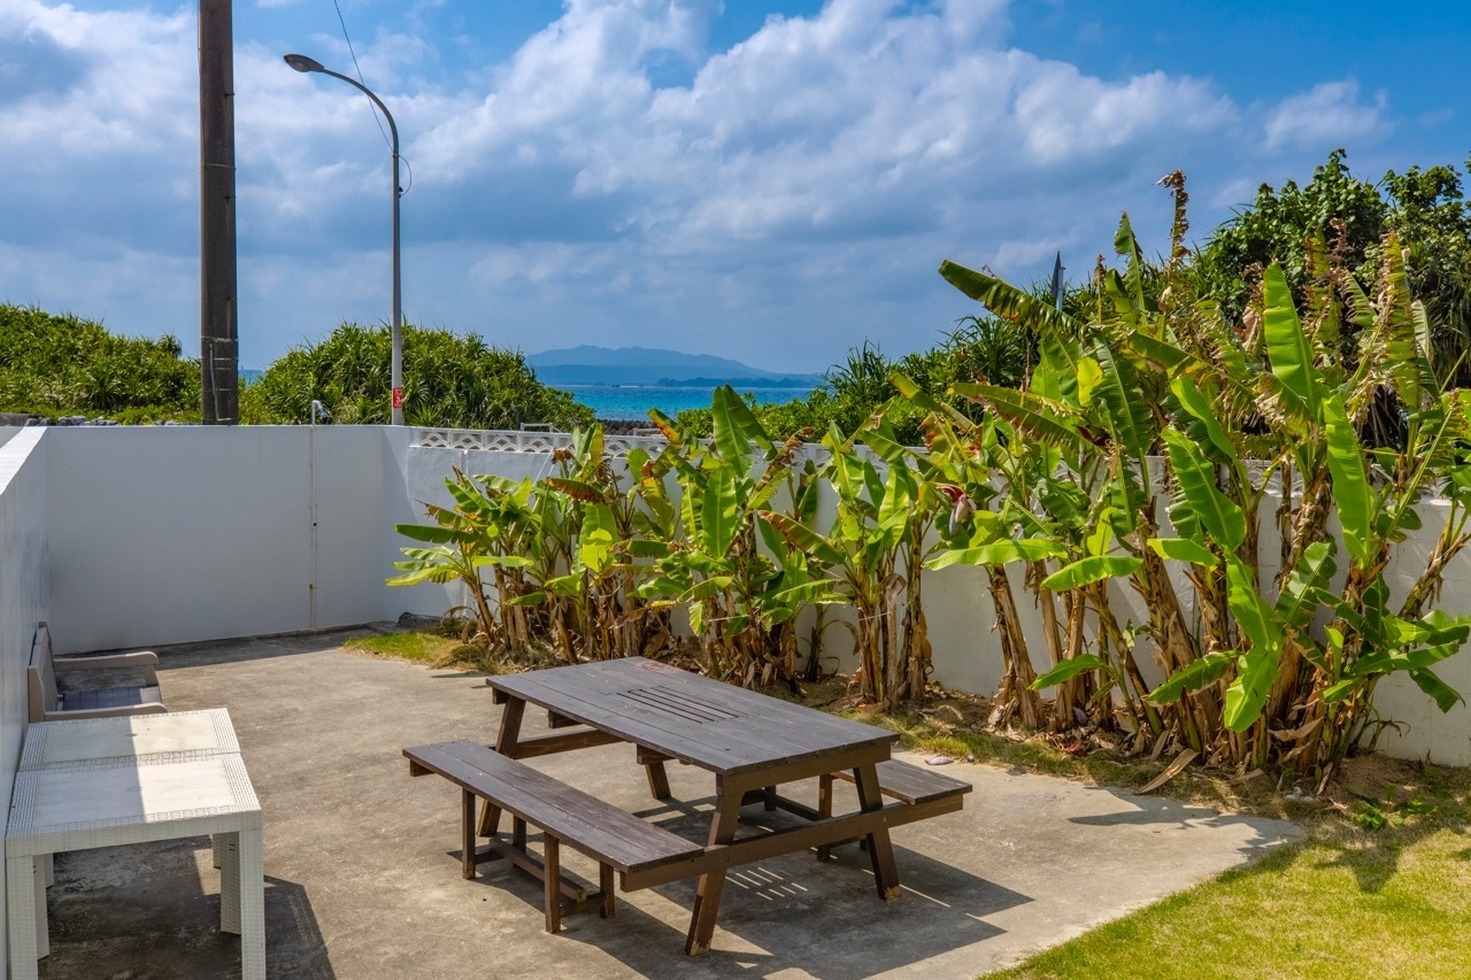 テラスから望む沖縄の絶景Ocean View!海辺の一軒家で心身リフレッシュ!